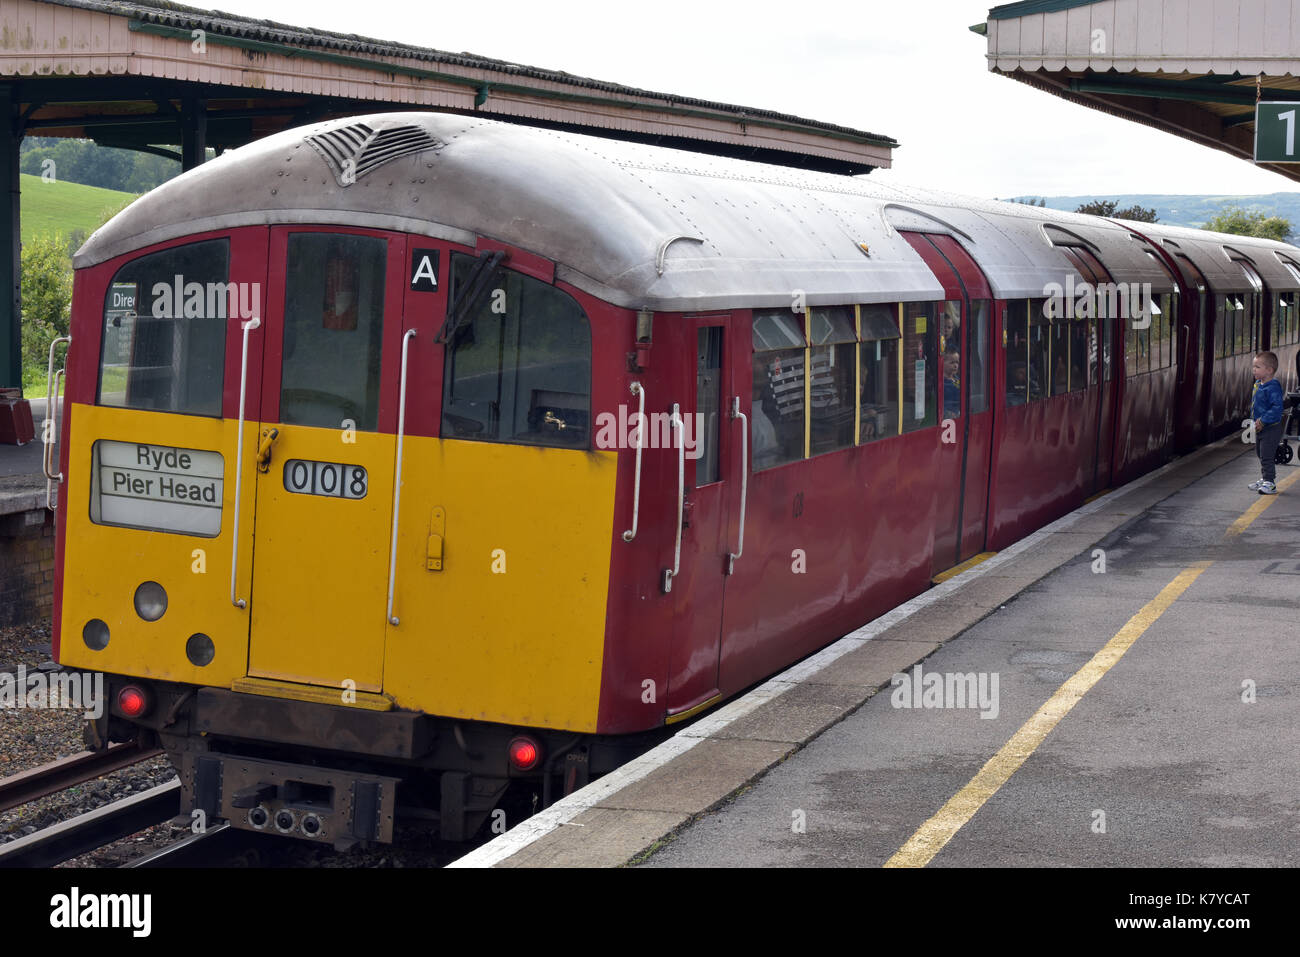 Une ligne de chemin de fer sur l'île principale de train sur l'île de Wight uk en utilisant une vieille ligne de métro Bakerloo jusqu'à la station de train brading patrimoine Railway museum. Banque D'Images